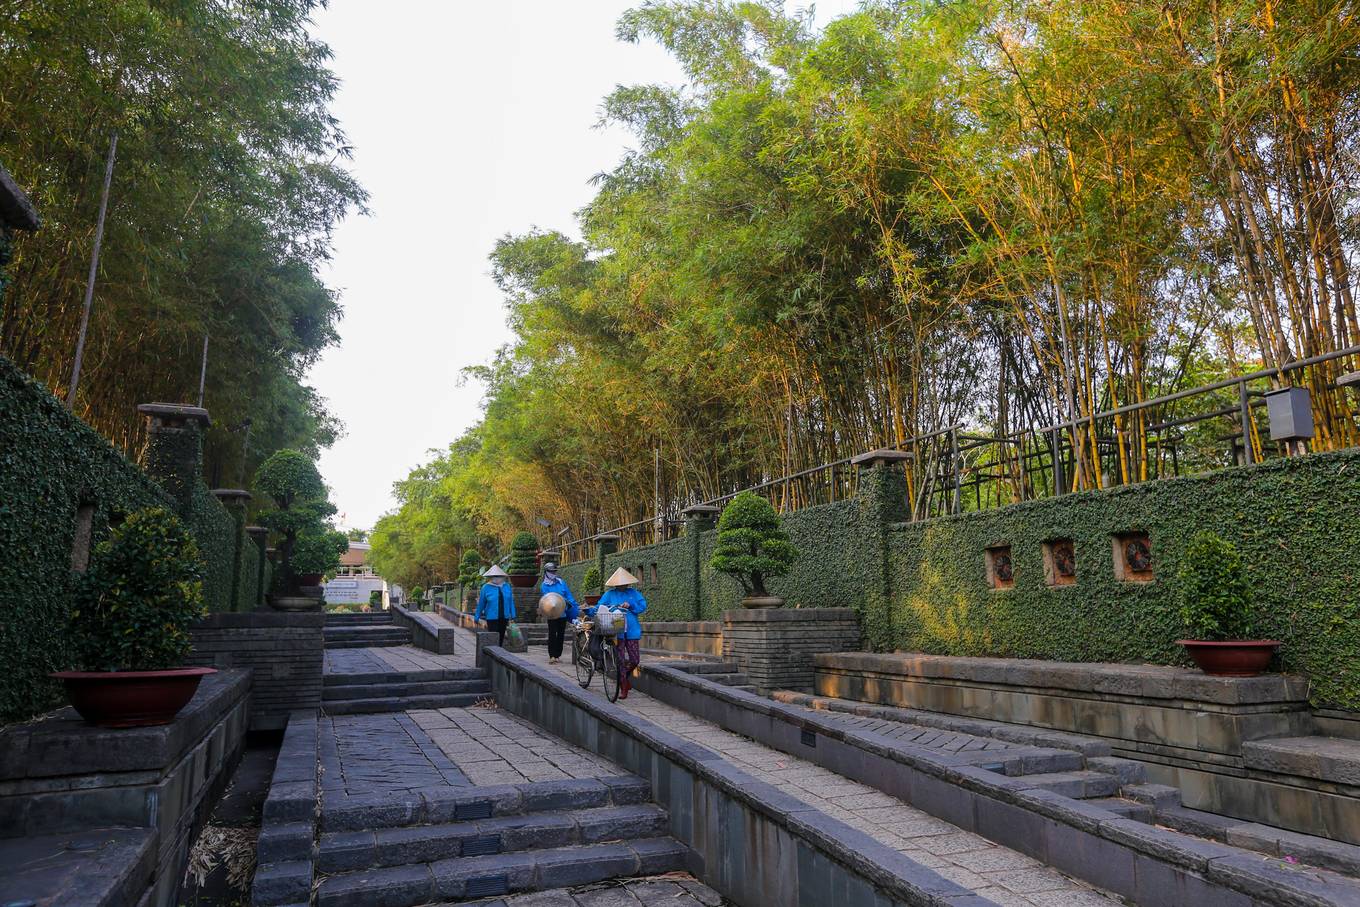 Đền tưởng niệm các vua Hùng lớn nhất Nam Bộ ở Sài Gòn